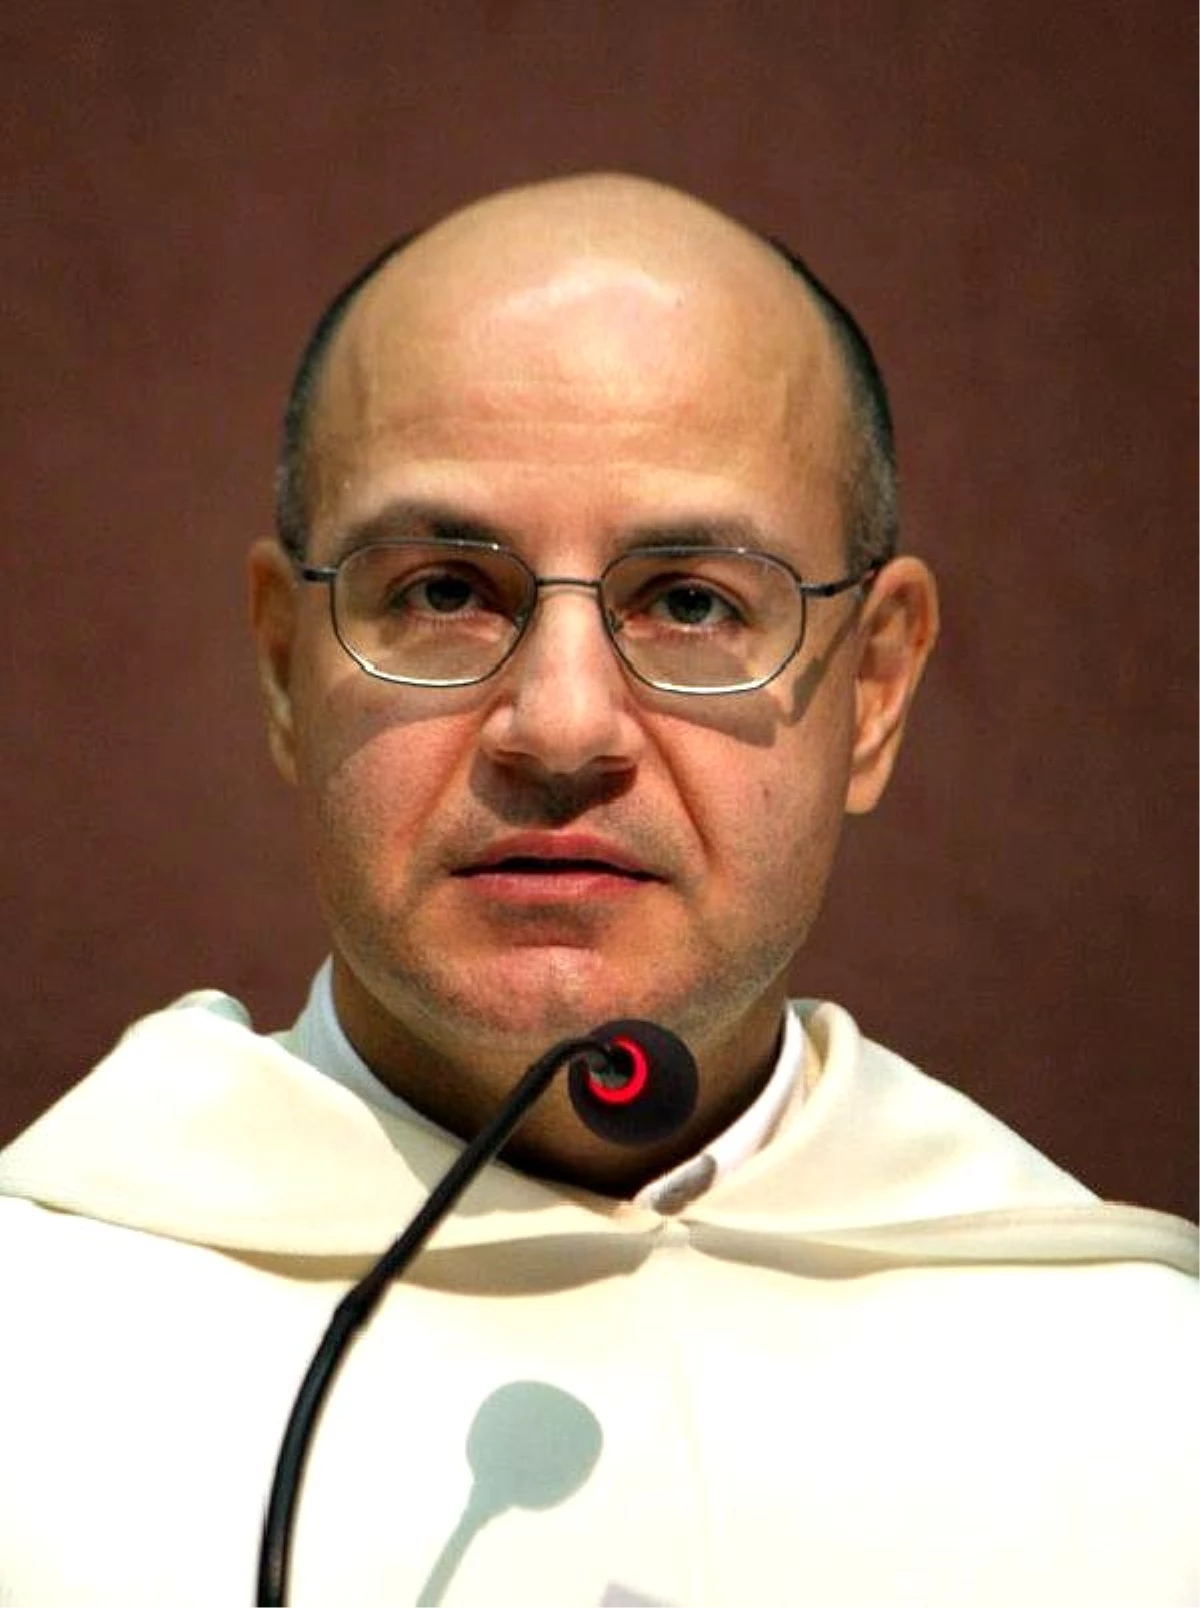 İtalyan Rahip: "Eşcinsellerde Kardiyovasküler Hastalıklar ve İntihar Daha Çok Görülüyor"